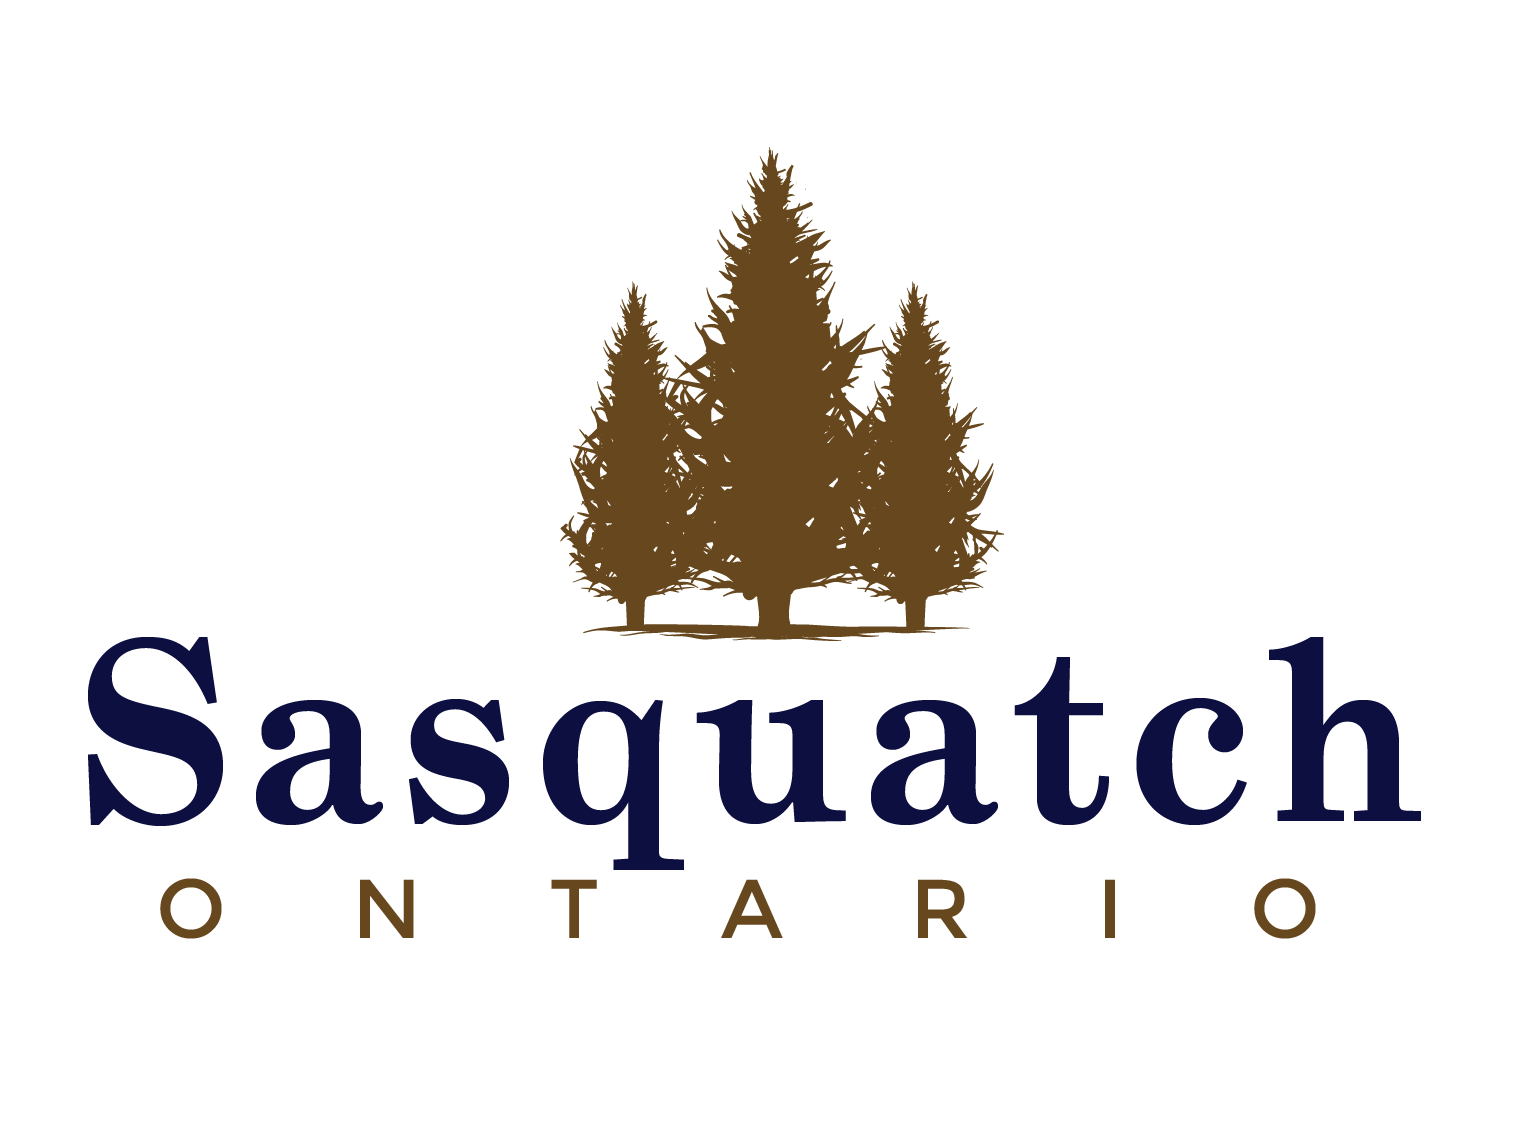 Sasquatch Ontario